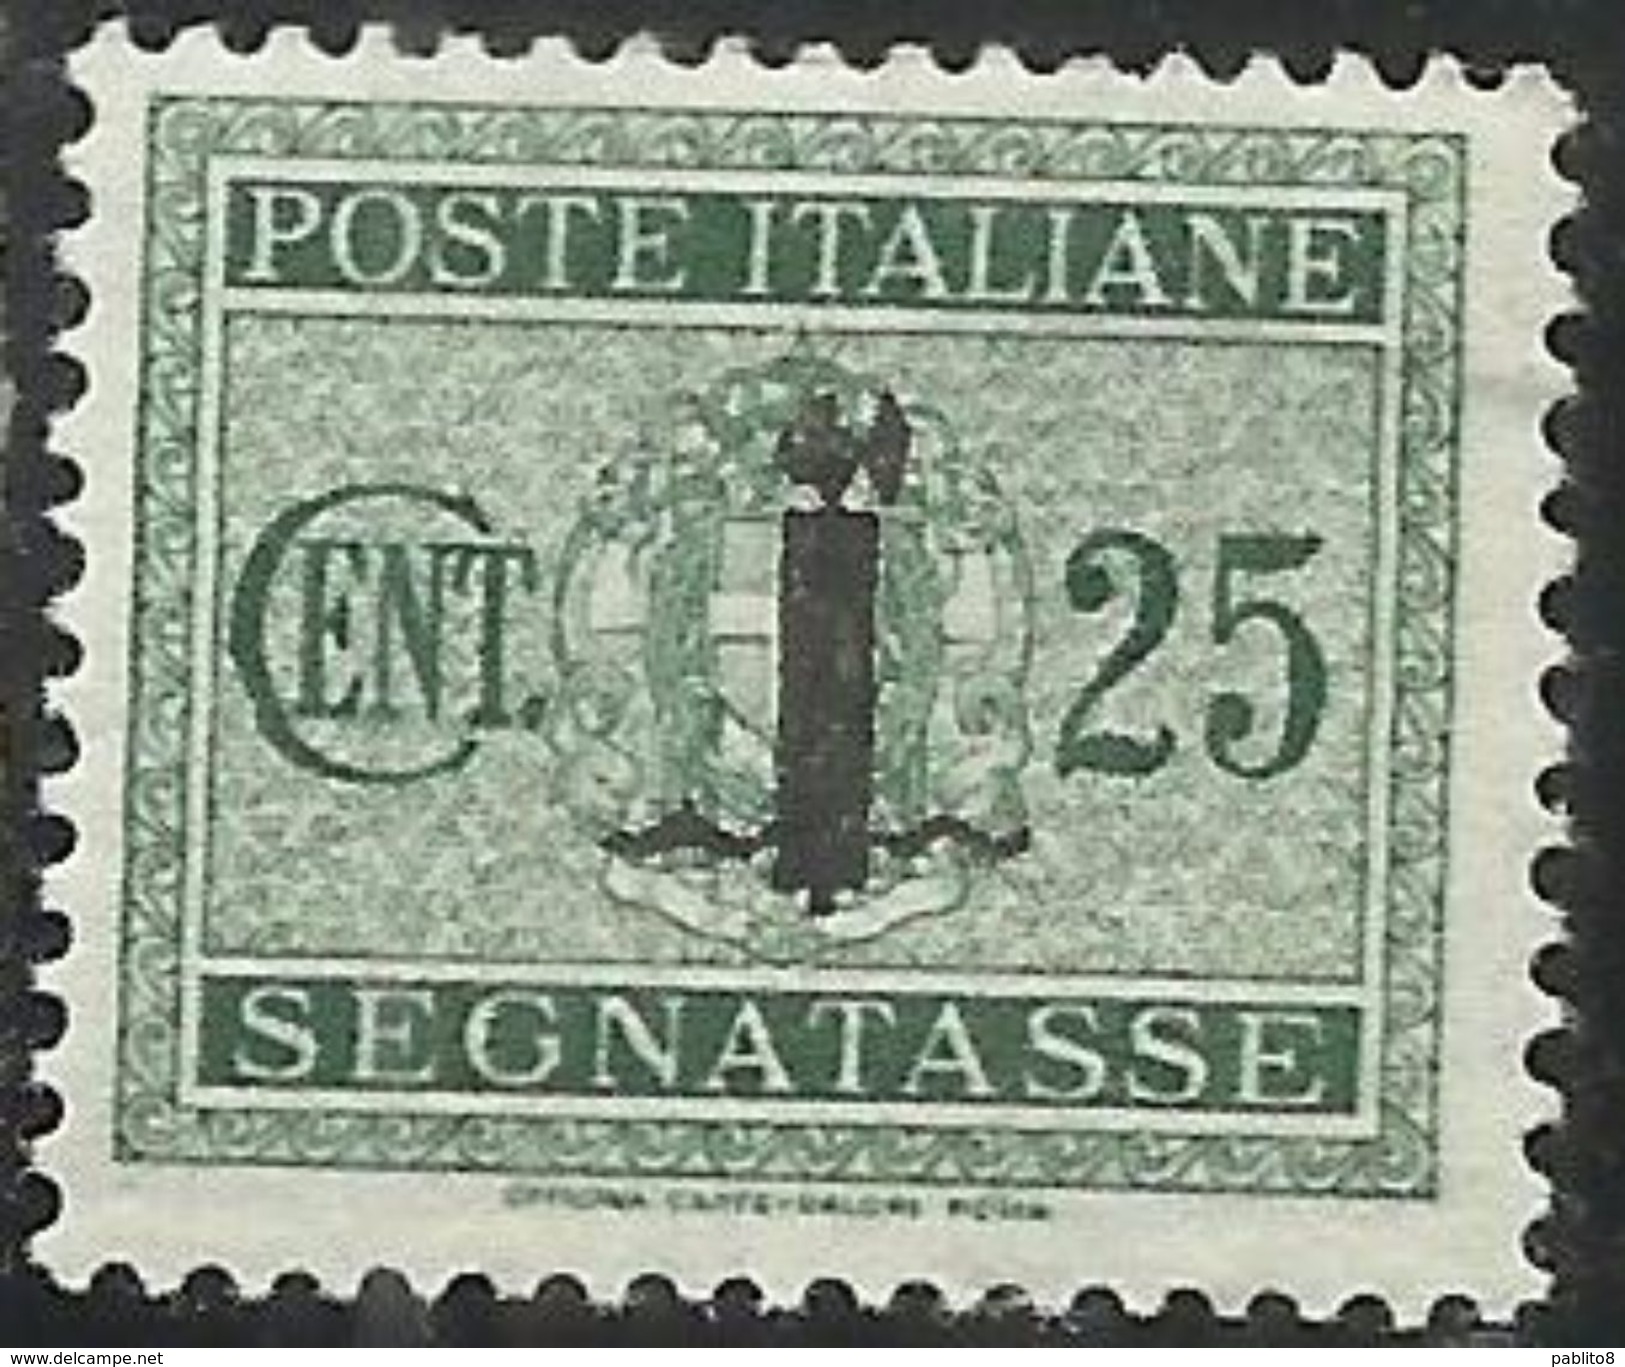 ITALIA REGNO REPUBBLICA SOCIALE RSI 1944 SEGNATASSE POSTAGE DUE PICCOLO FASCIO FASCIETTO CENT. 25 TASSE  MLH - Impuestos